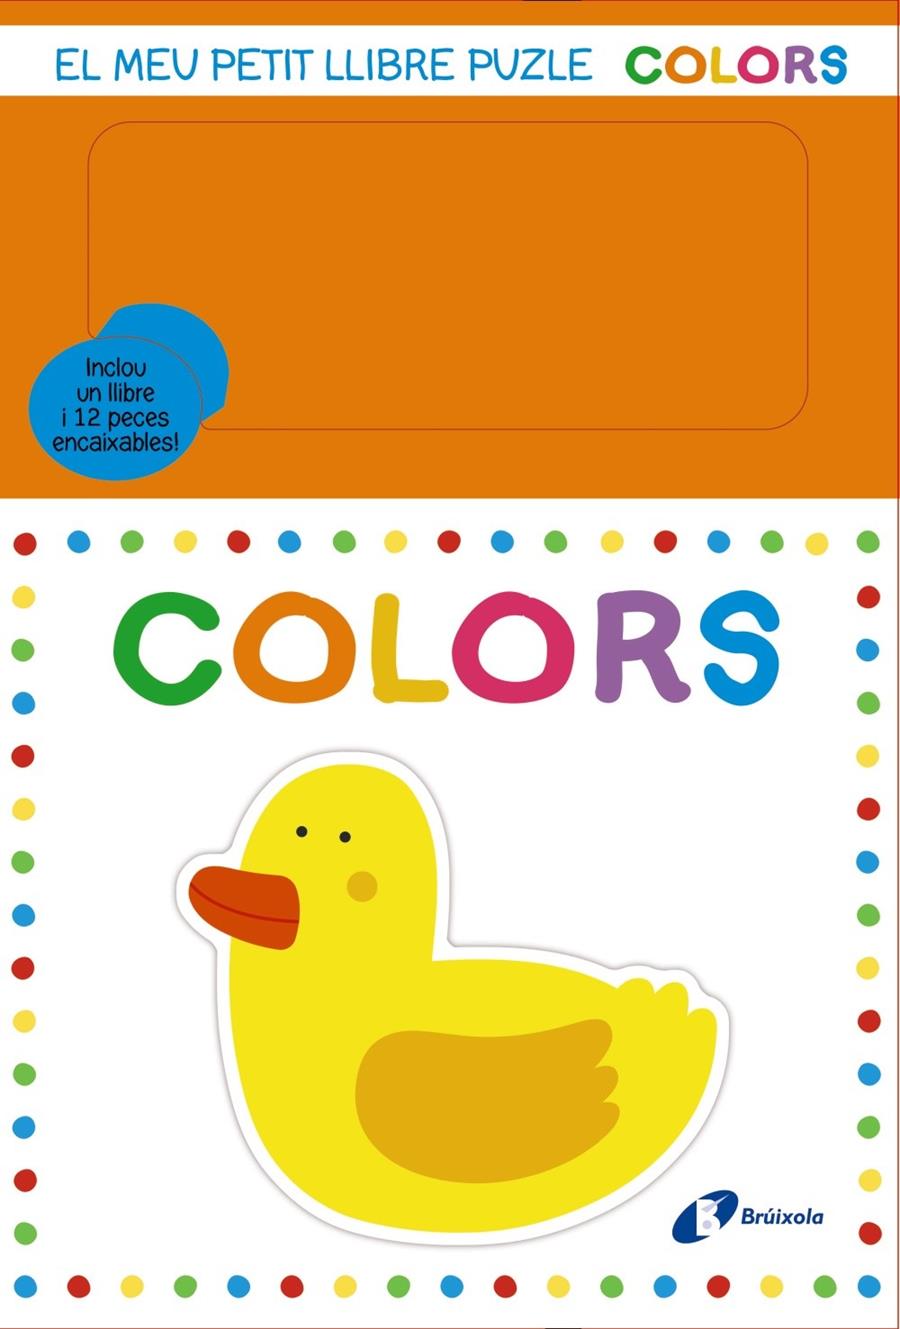 El meu petit llibre puzle. Colors | Varios Autores | Cooperativa autogestionària